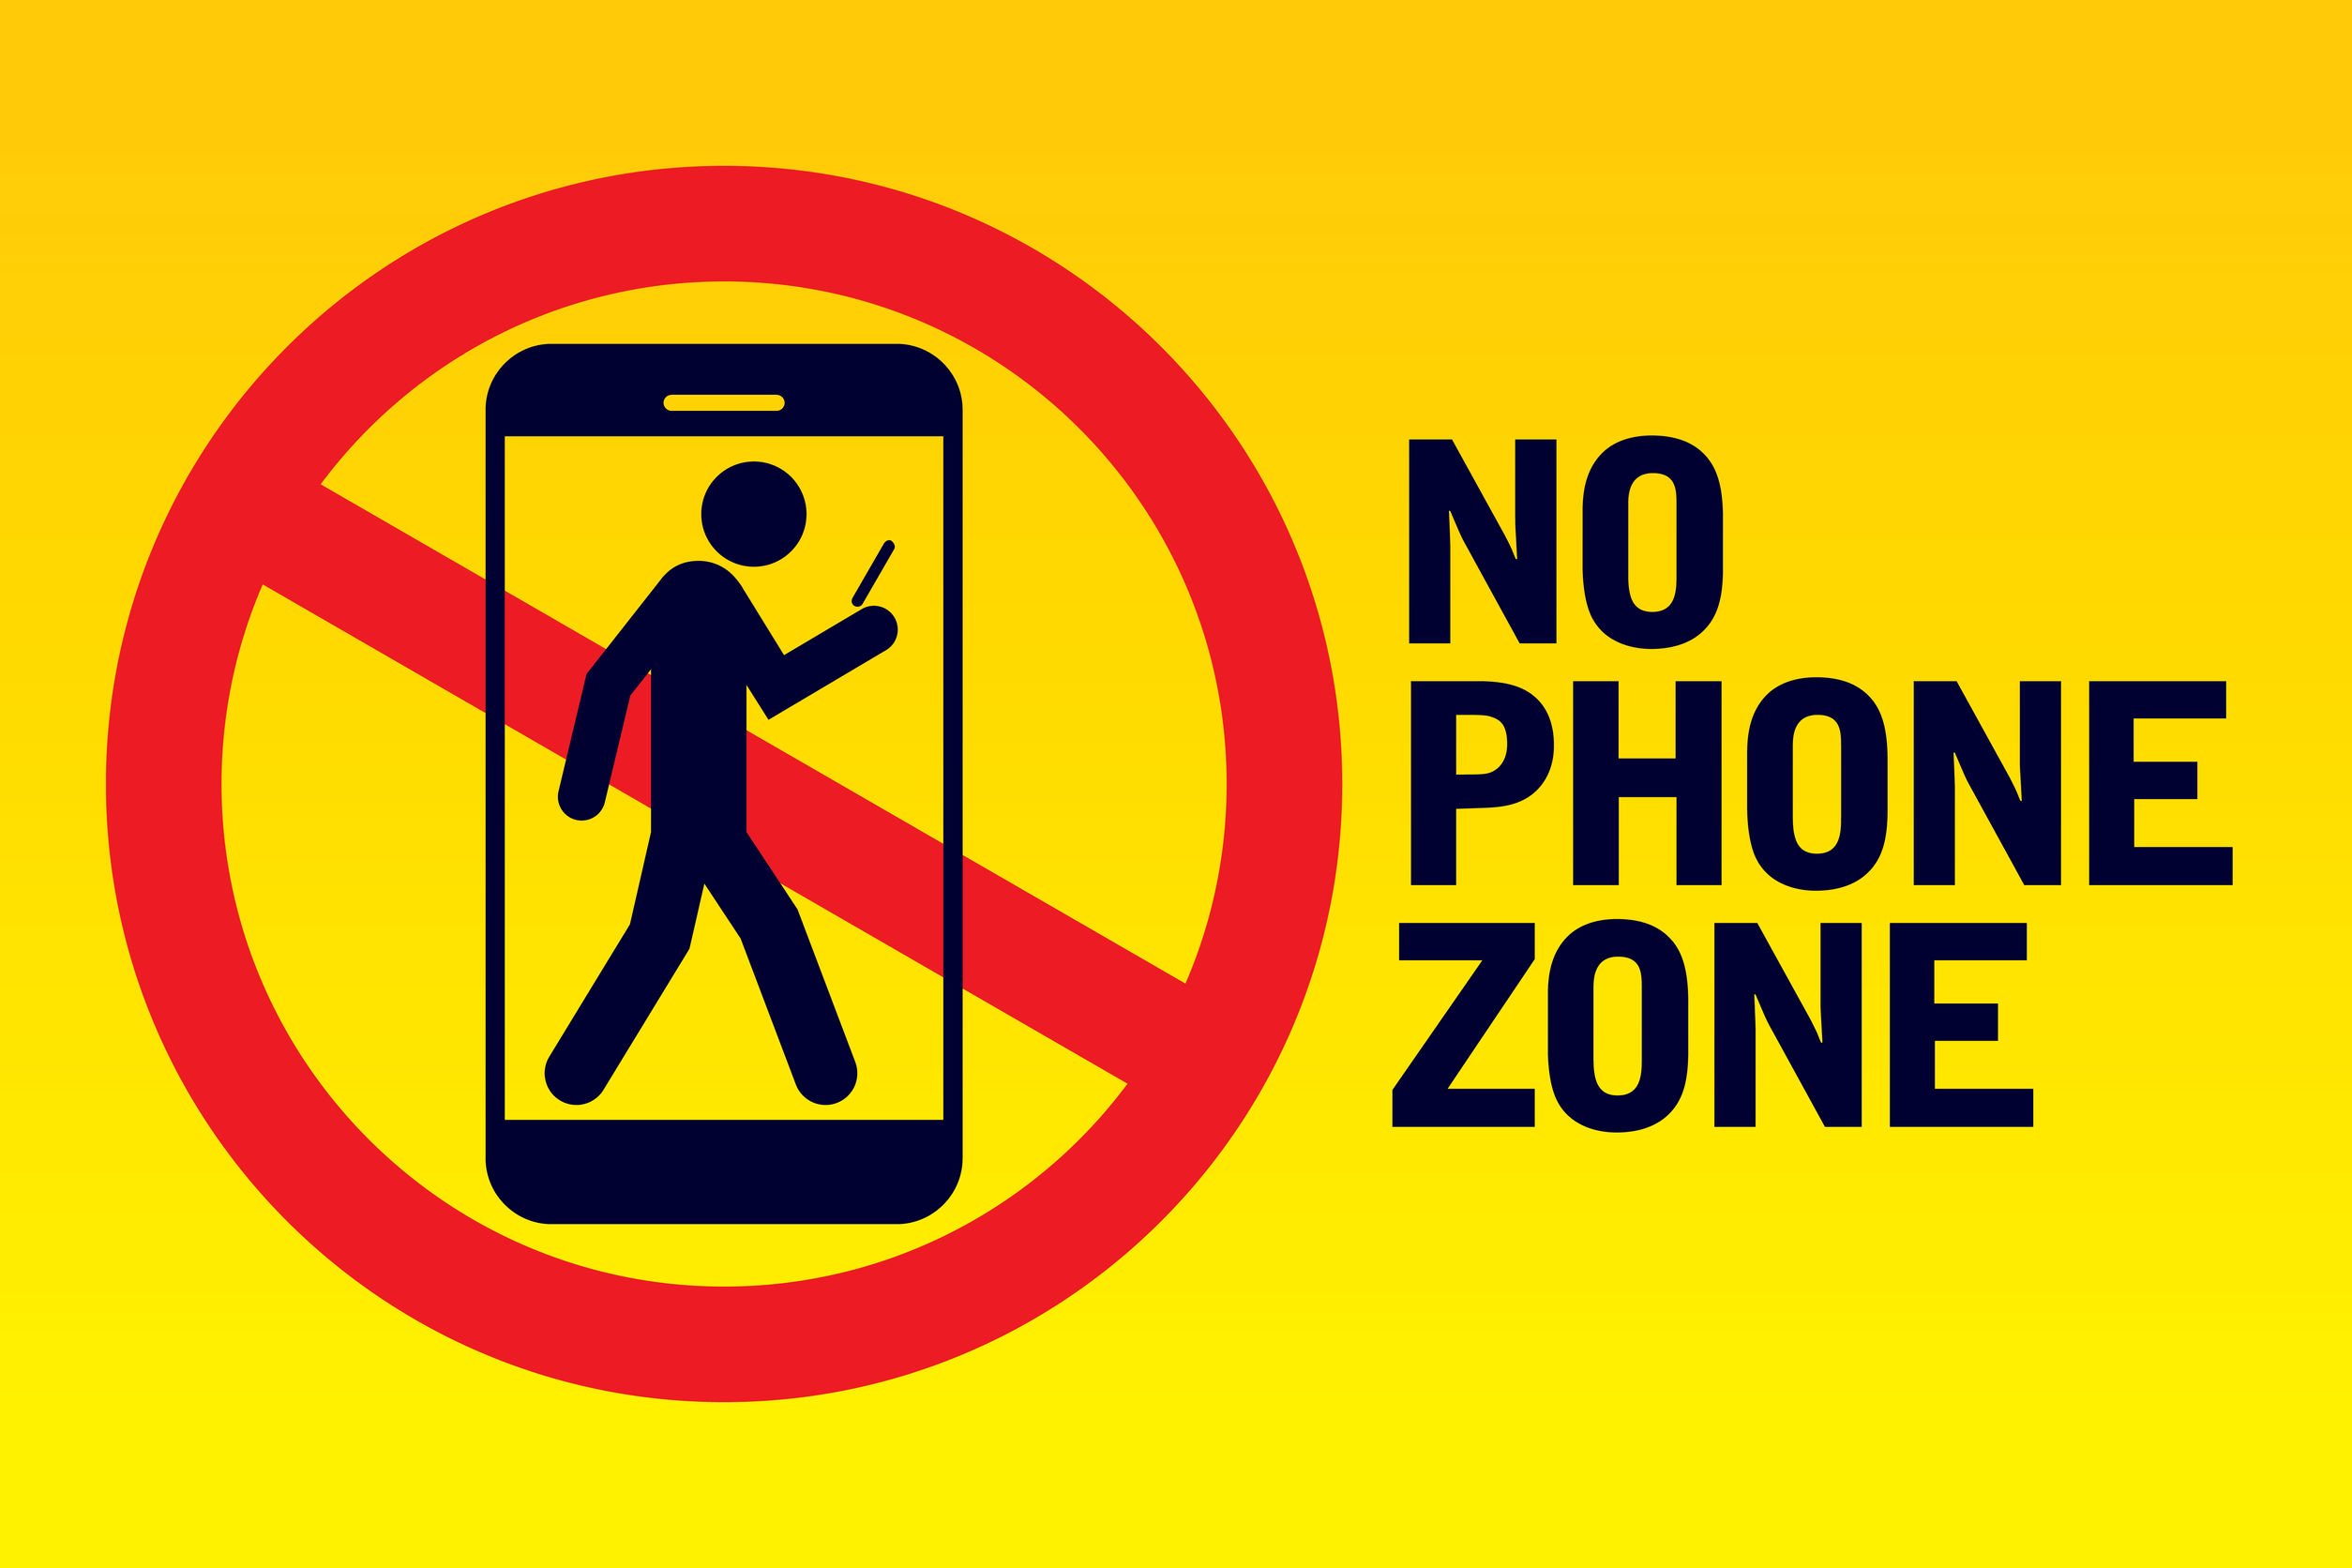 Ilustração com a mensagem zona sem celular escrita em inglês